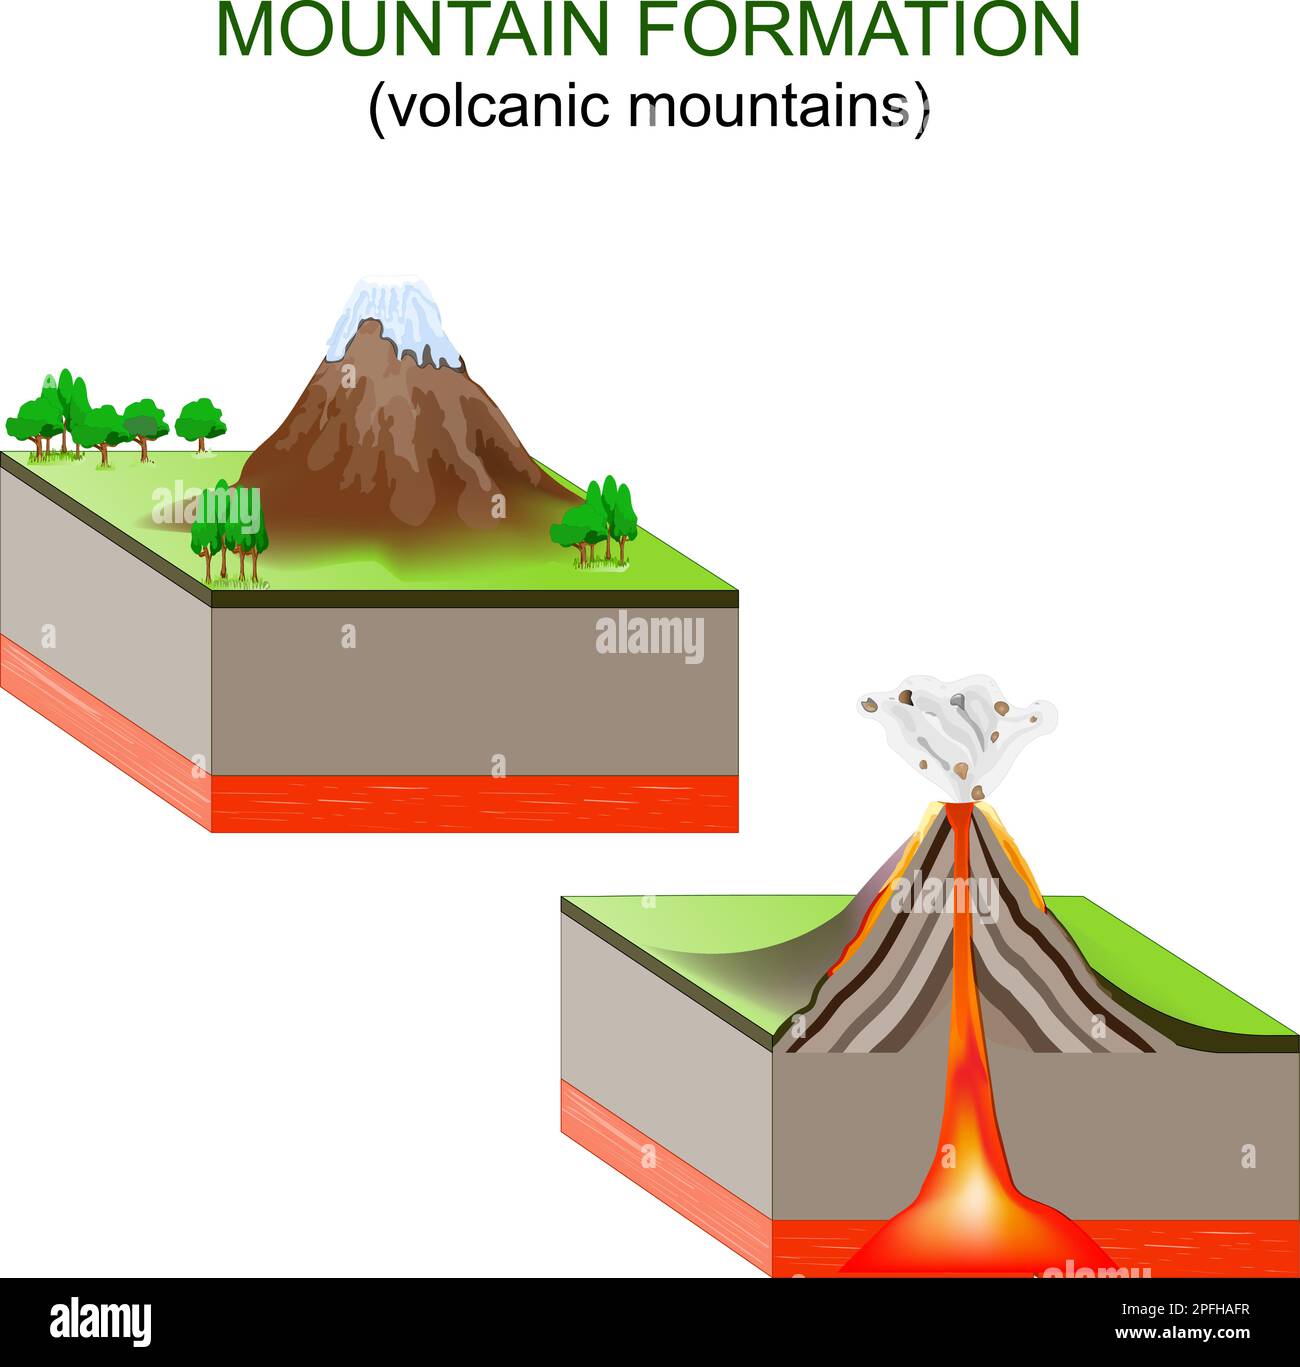 formazione di montagna. Montagne vulcaniche. I movimenti delle piastre tettoniche creano vulcani lungo i confini delle piastre, che eruttano e formano le montagne. Vect Illustrazione Vettoriale